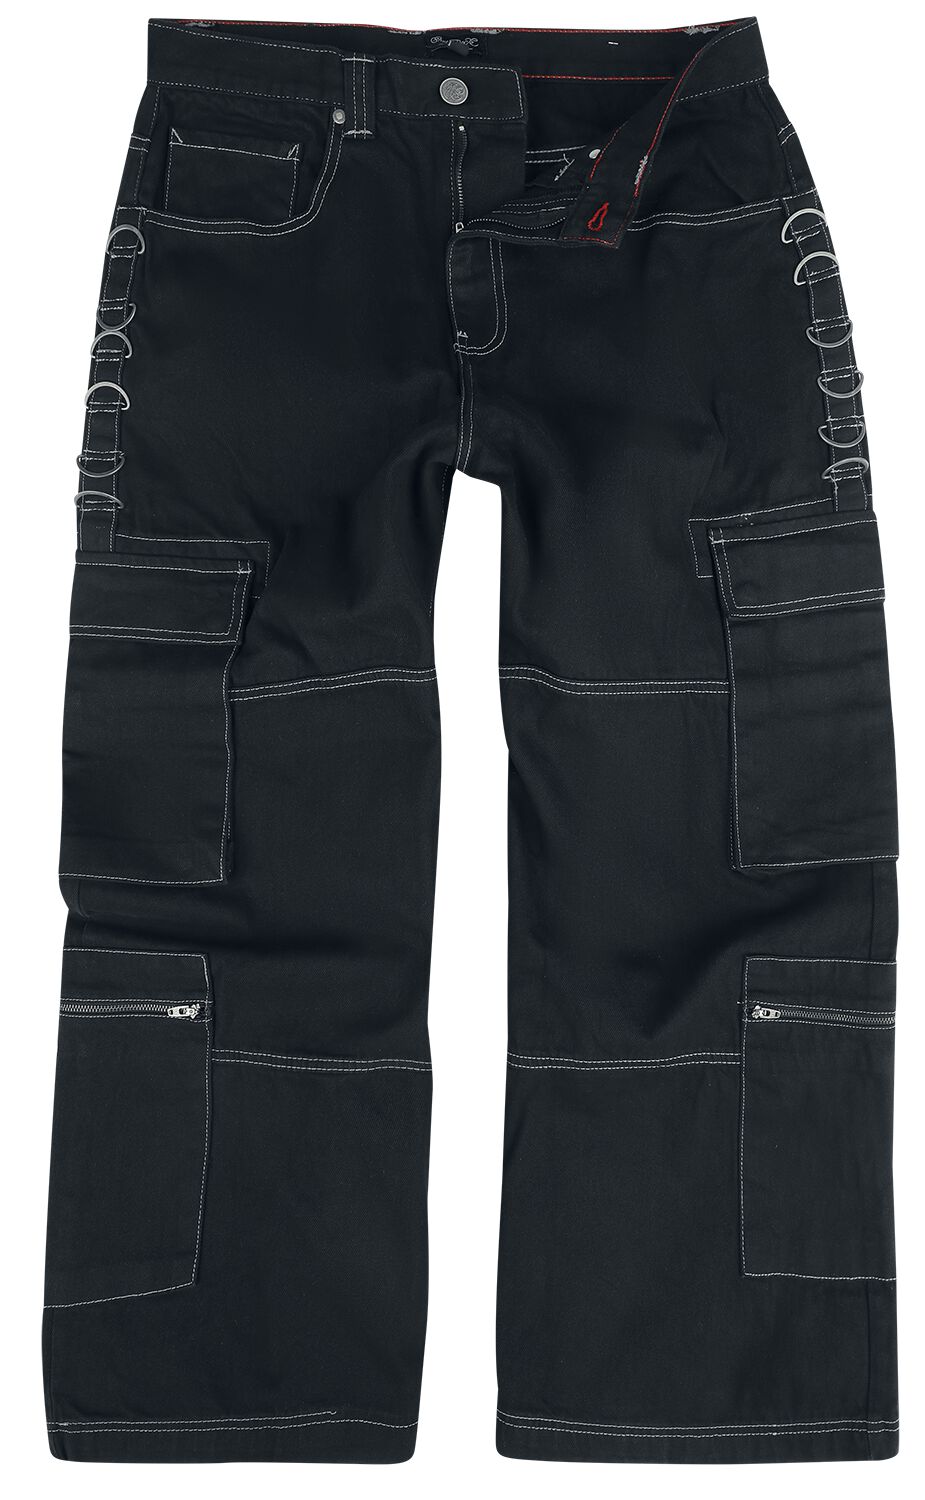 Chet Rock Jeans - Monaghan Utility Jeans - W30L32 bis W38L34 - für Männer - Größe W34L34 - schwarz von Chet Rock